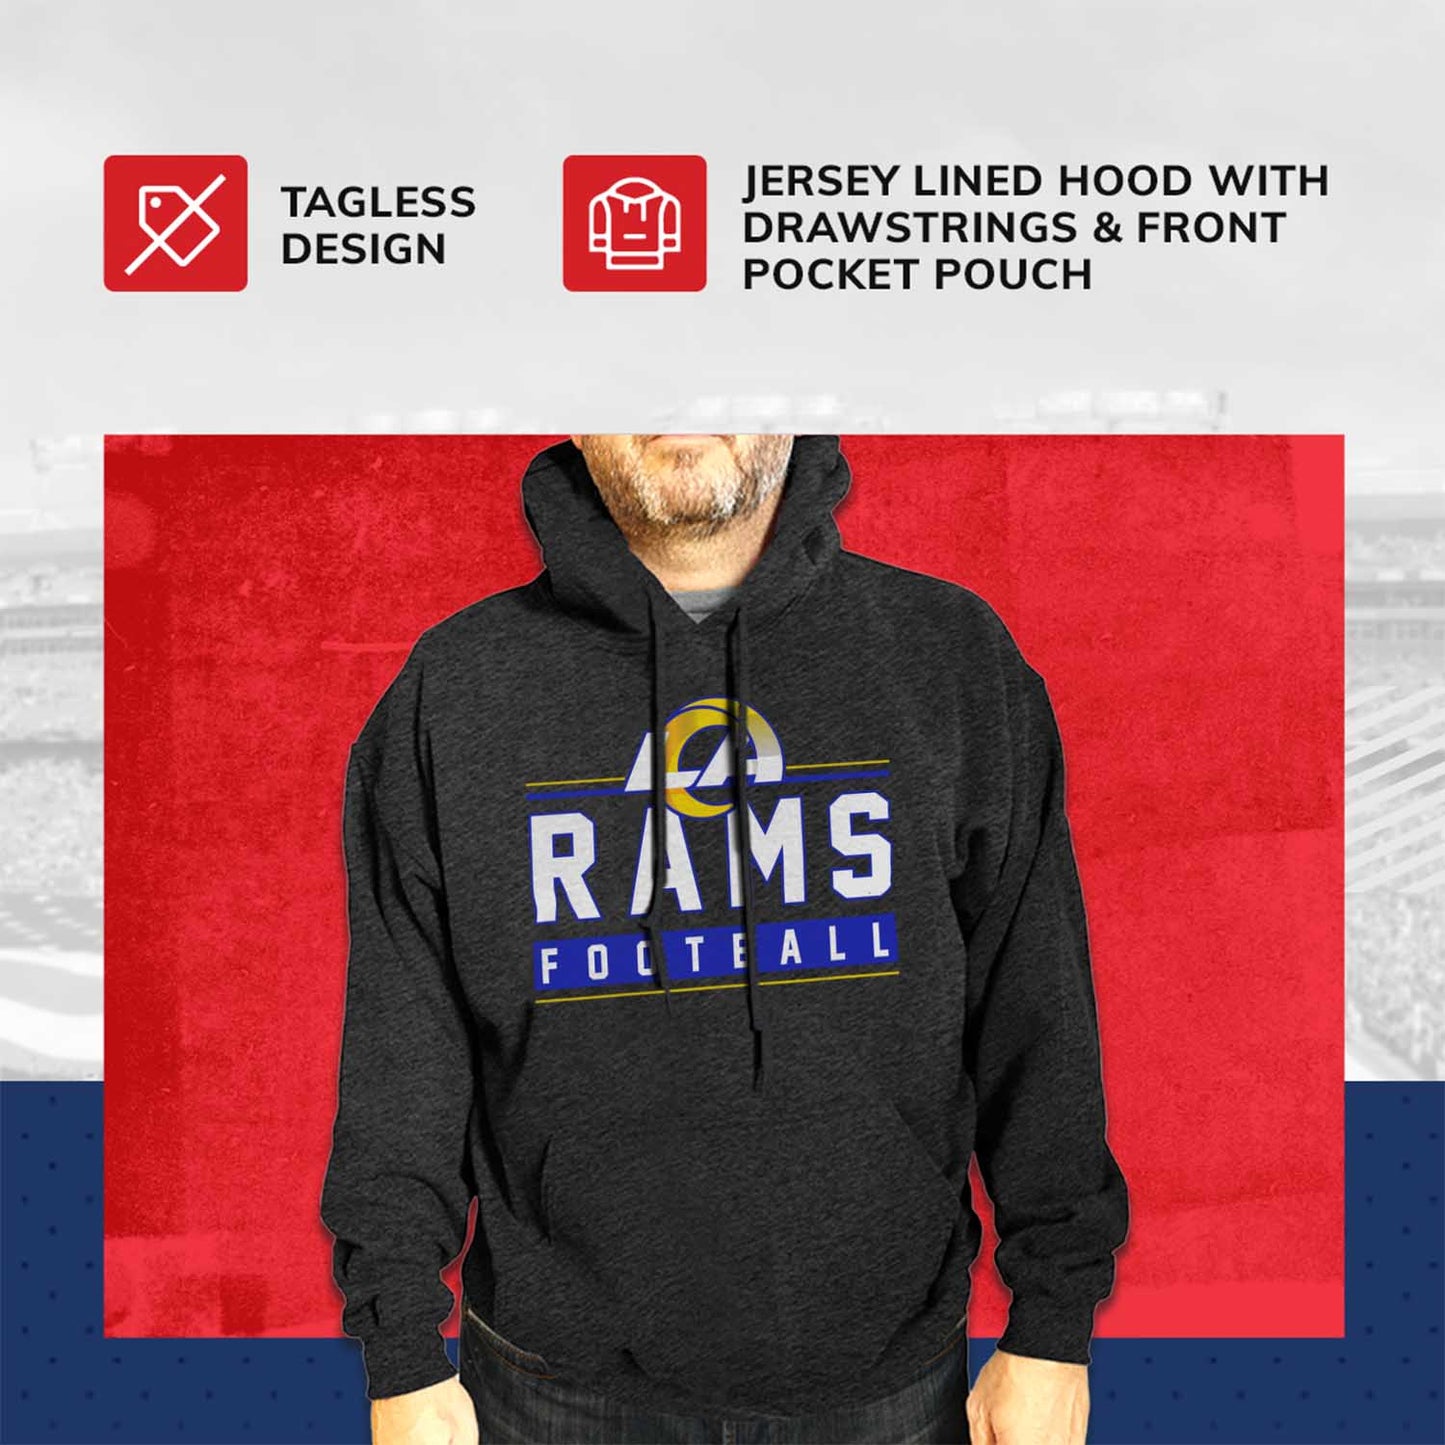 Los Angeles Rams NFL Adult True Fan Hooded Charcoal Sweatshirt - Charcoal